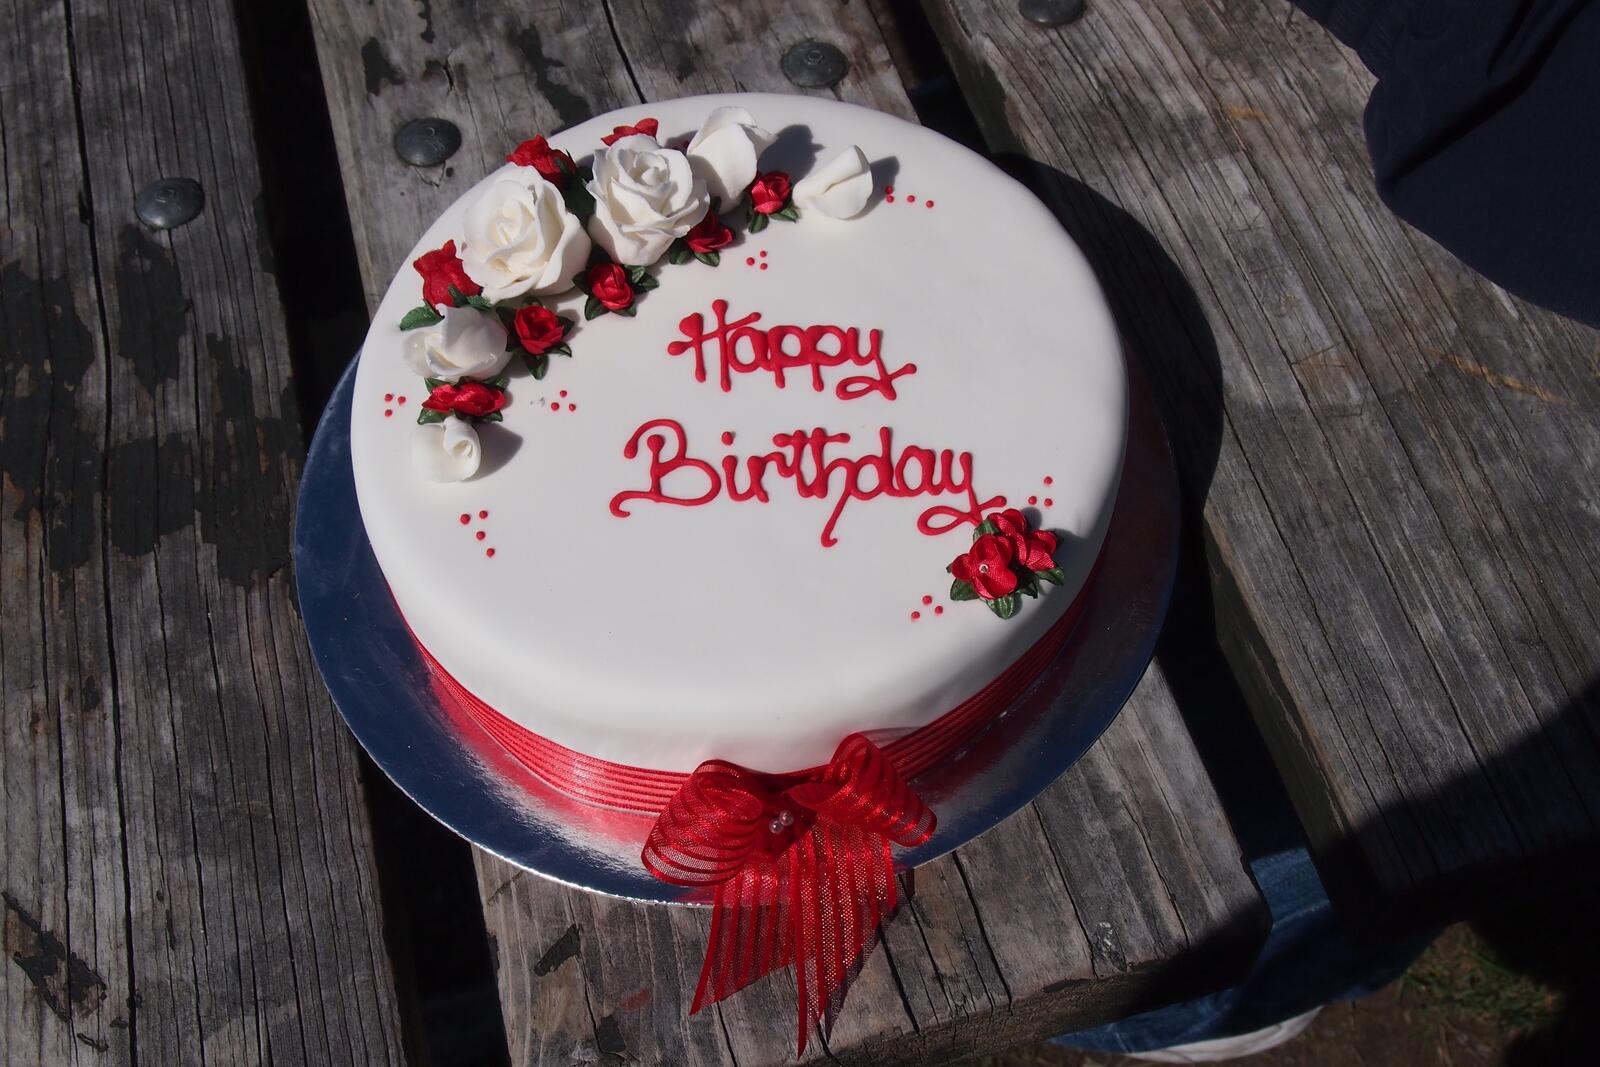 This is my cake. Тортик с днем рождения. Тортик с надписью. Красивые надписи на торт. Надпись на торте с днем рождения.